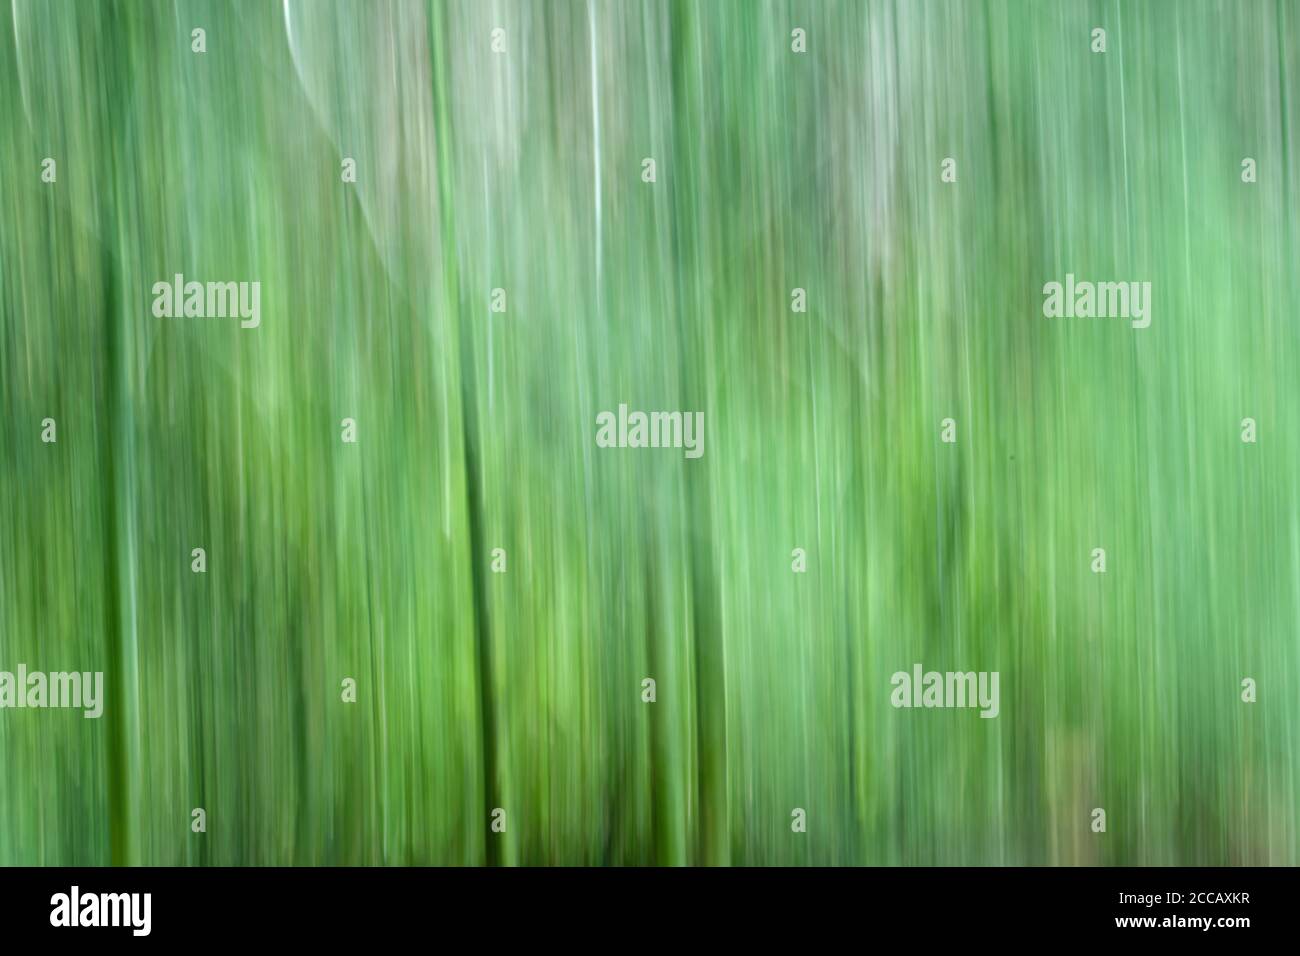 Image de flou de mouvement des tiges d'asperges. Le flou de mouvement est souvent utilisé dans la photographie de nature. Banque D'Images